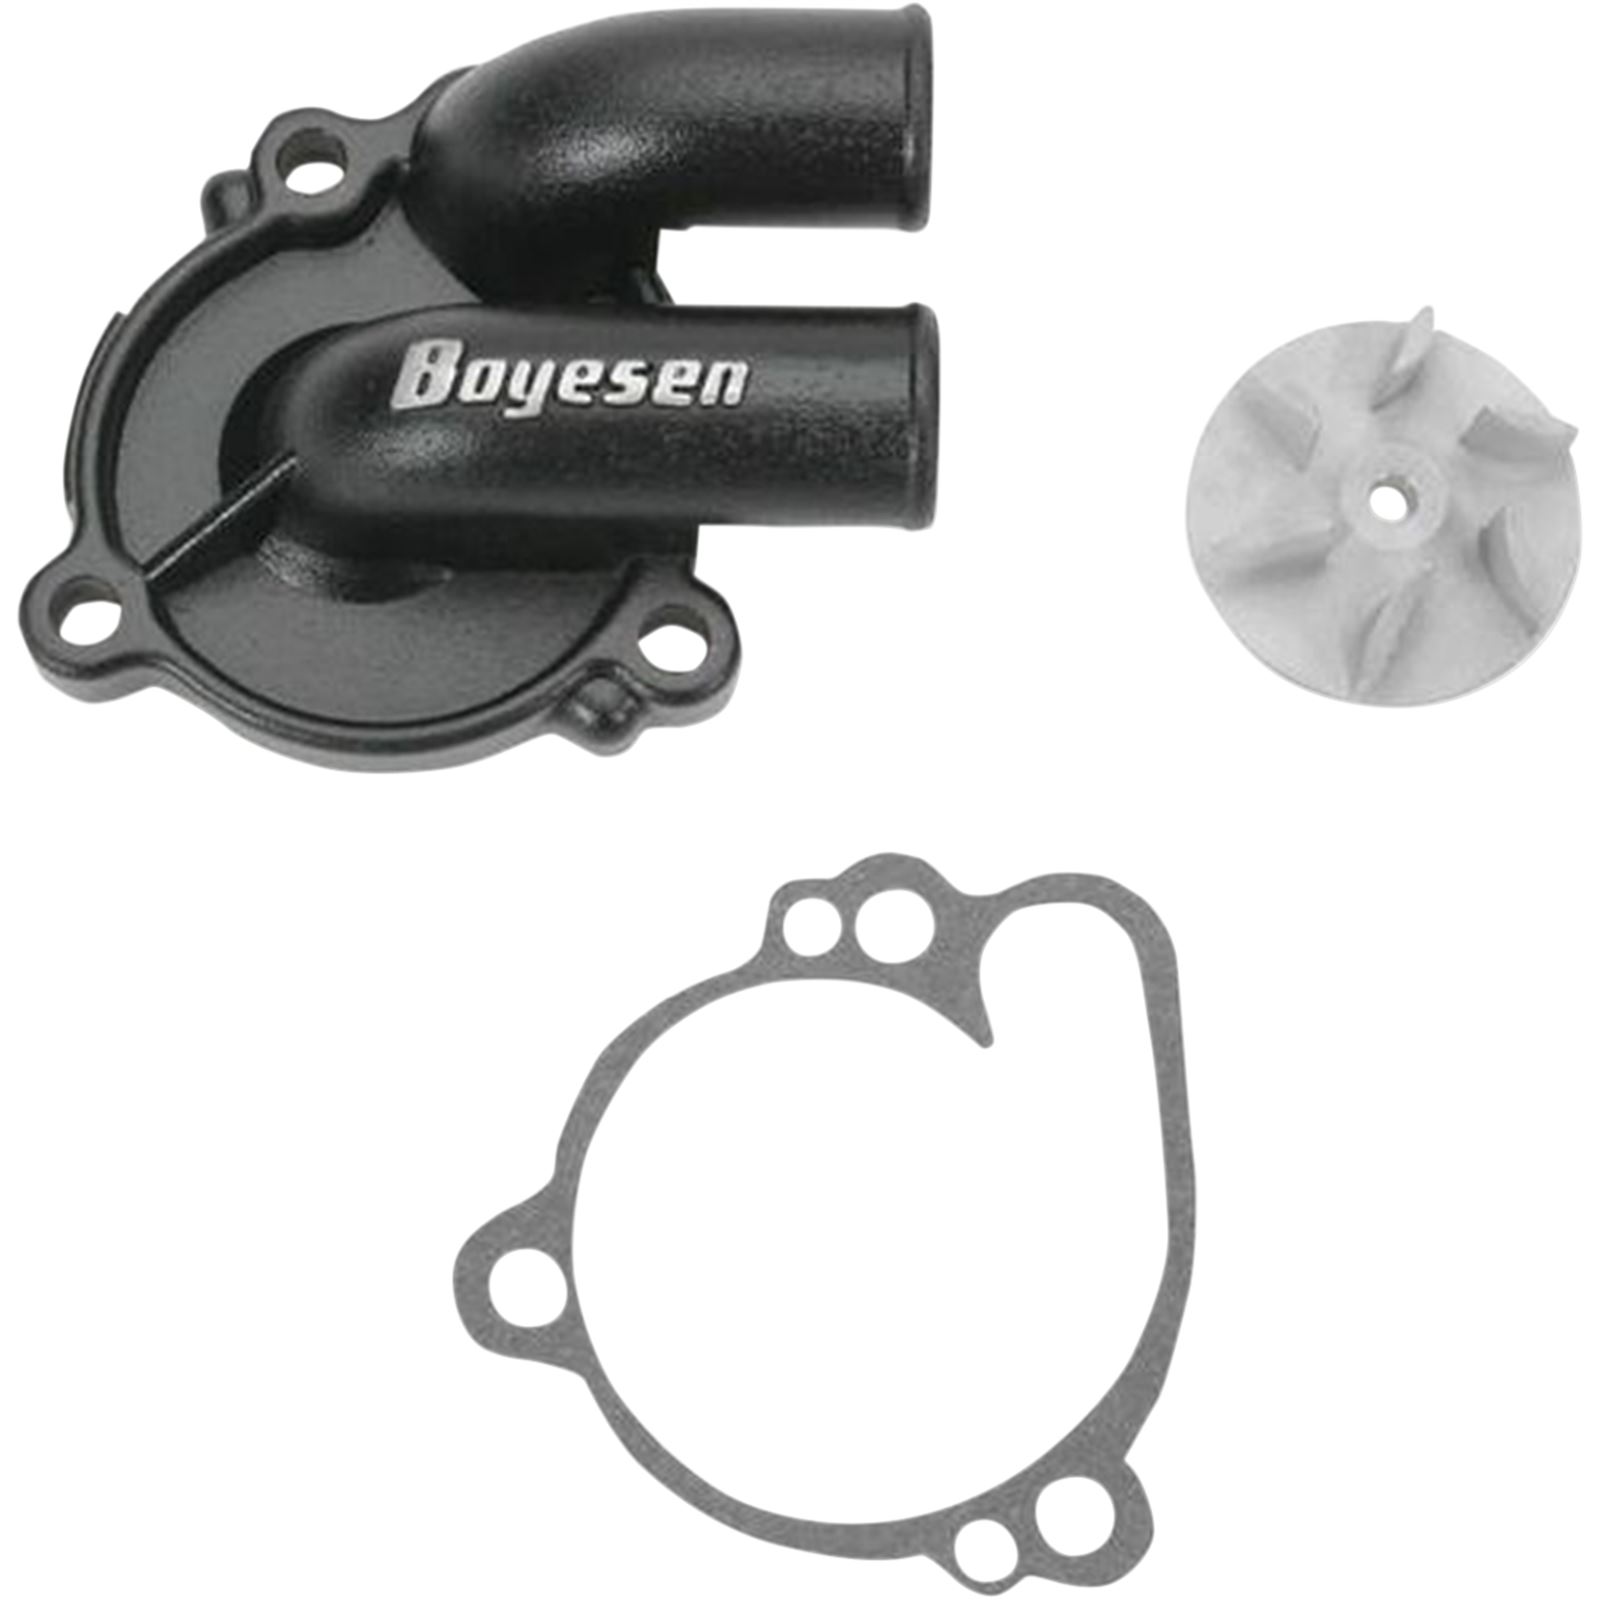 Boyesen Hy-Flo Water Pump Cover & Impeller Kit